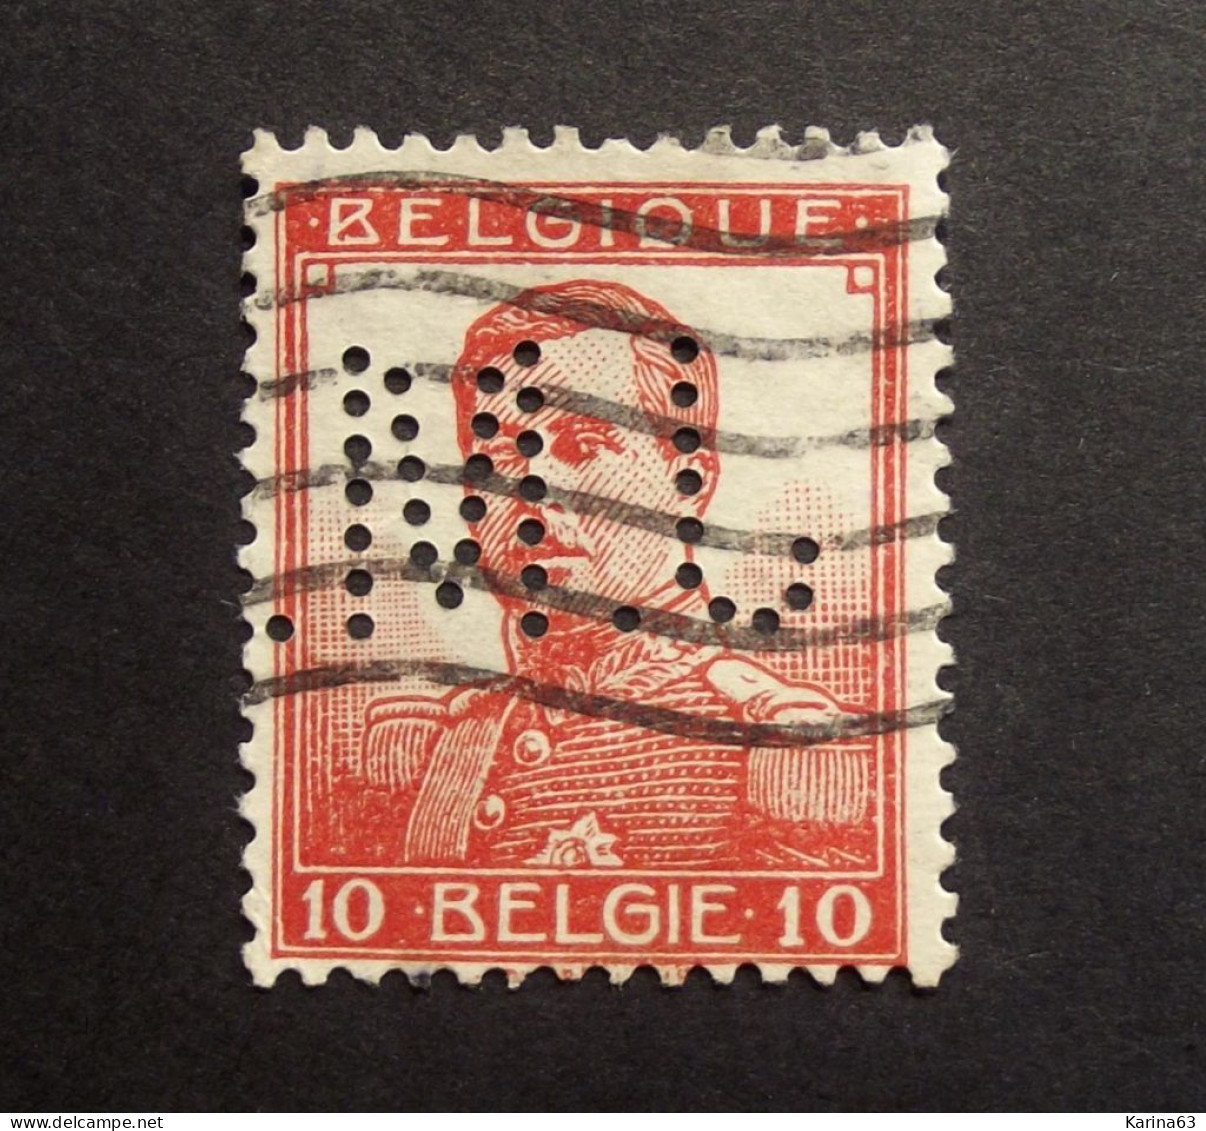 België - Belgique - Perfin Perforé -  J.M. - Josef Marcotty, Brussels. (1909-1914) -  COB 111 - Cancelled - 1909-34